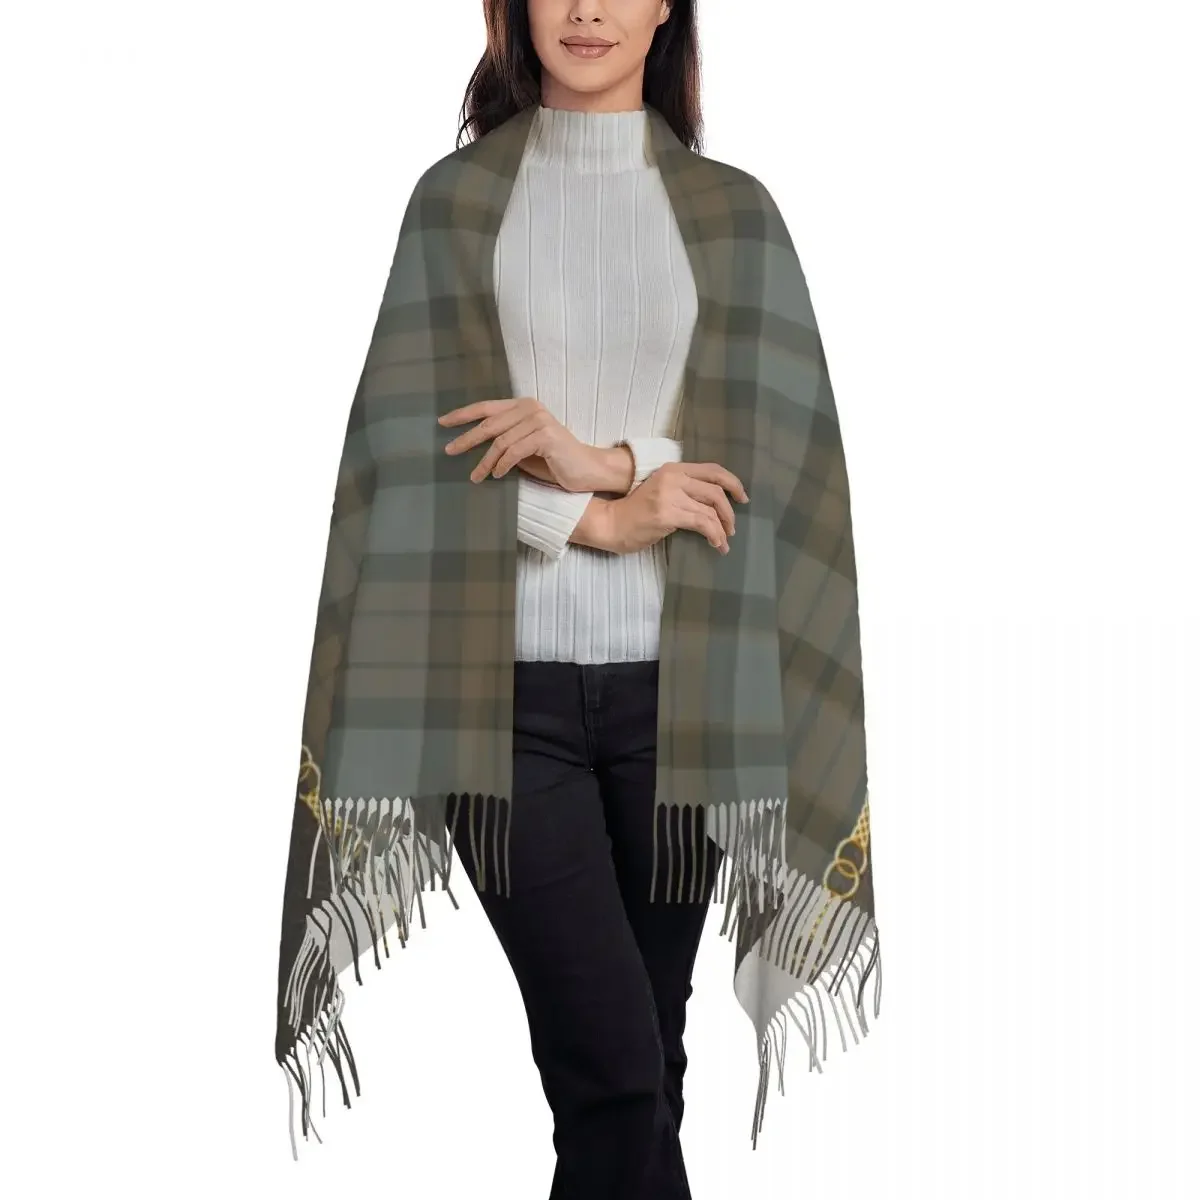 Fashion Leather And Tartan Sassenach Pattern Tassel Scarf Women Winter Warm Shawls Wraps Lady Dragonfly Outlander Scarves